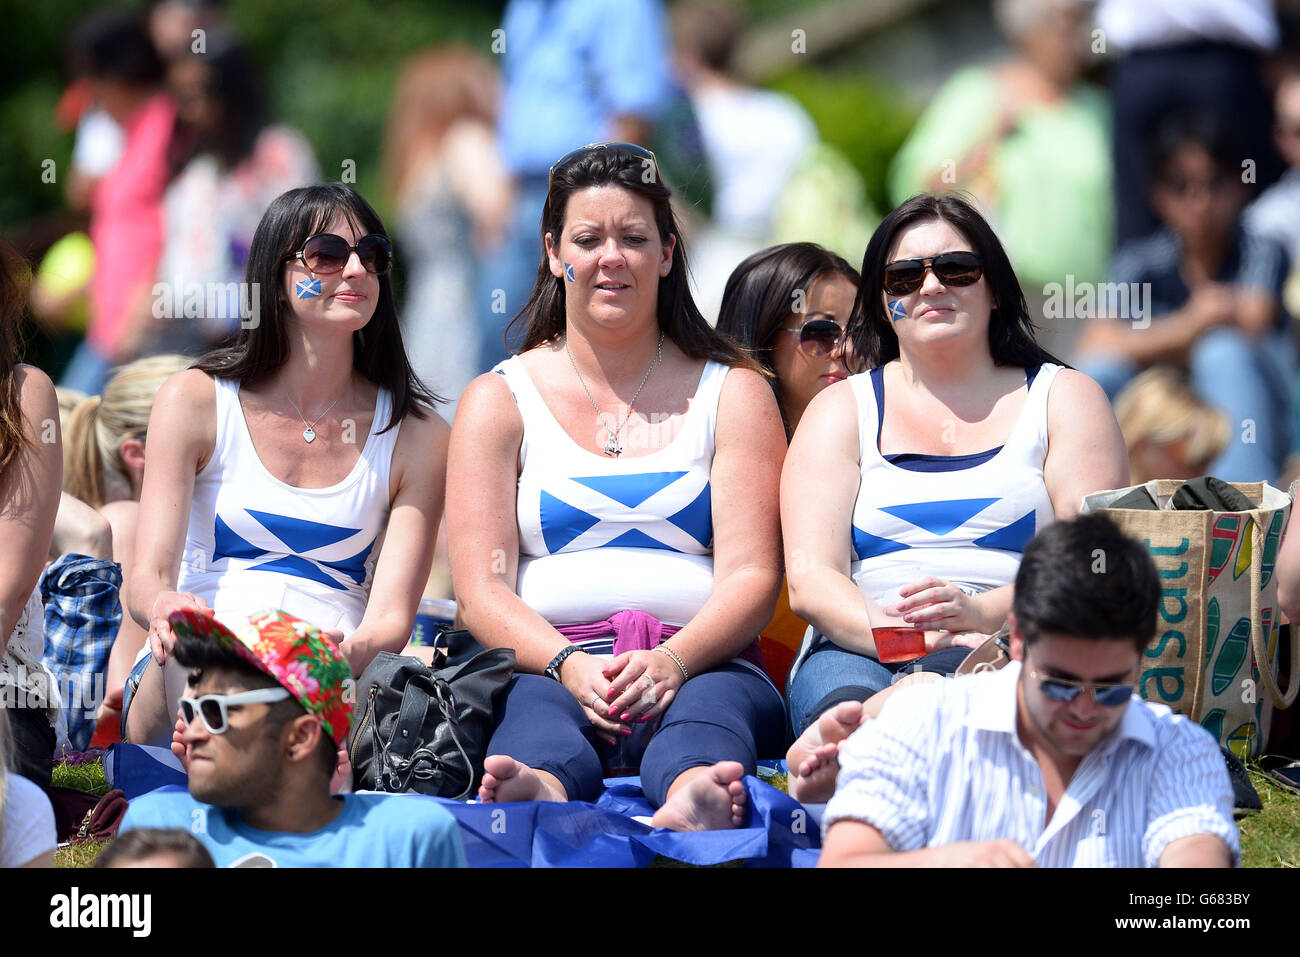 Fans sur Murray Mount pendant le onze jour des championnats de Wimbledon au All England Lawn tennis and Croquet Club, Wimbledon. Banque D'Images